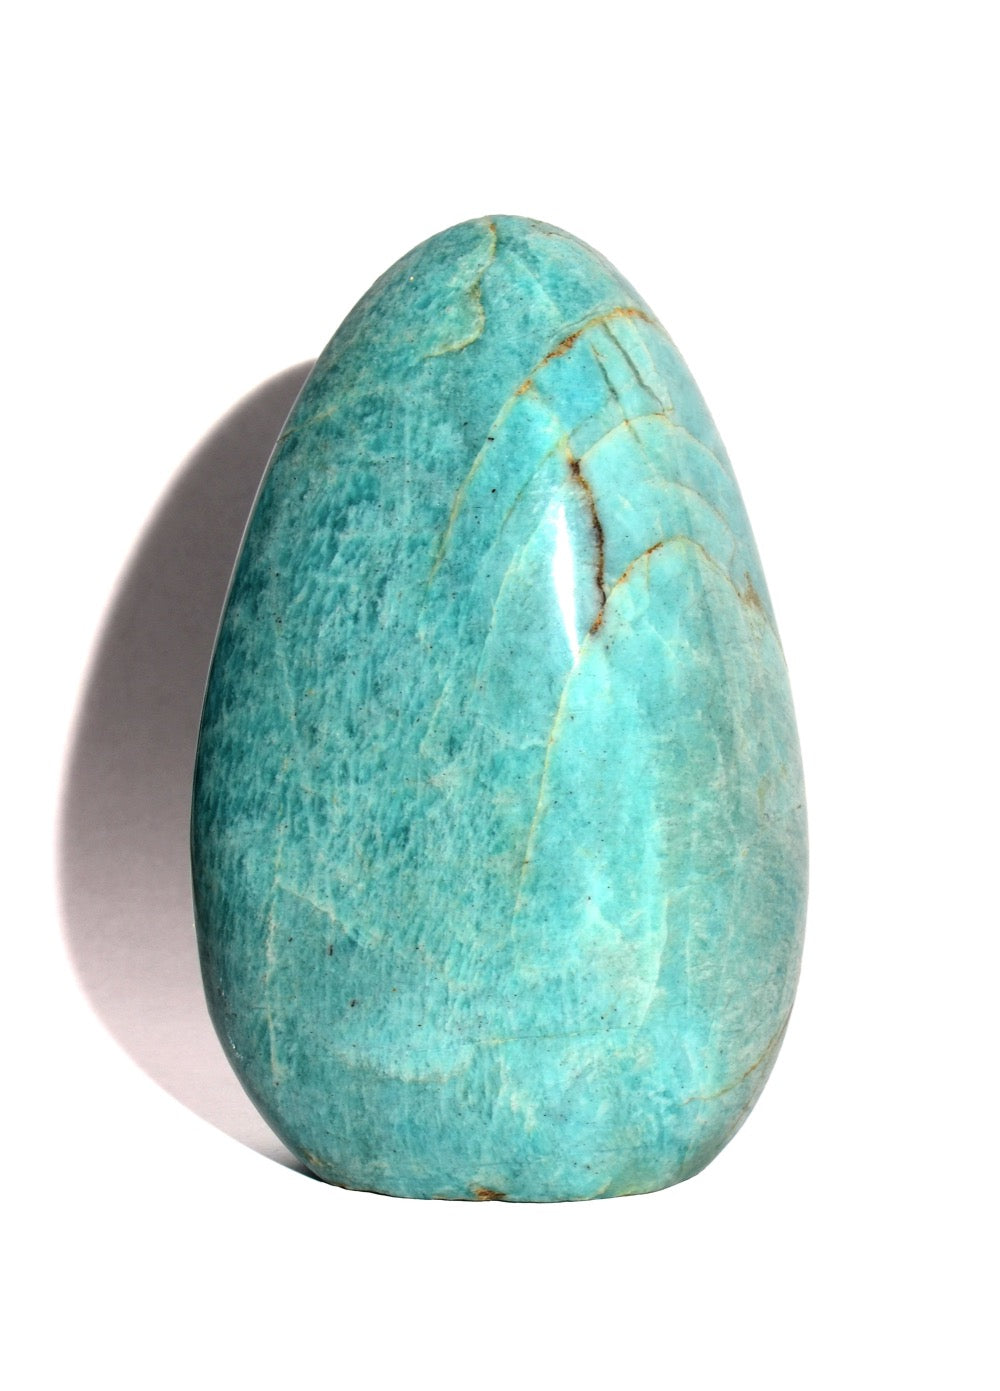 Amazonite Polished Egg shaped form with flat base